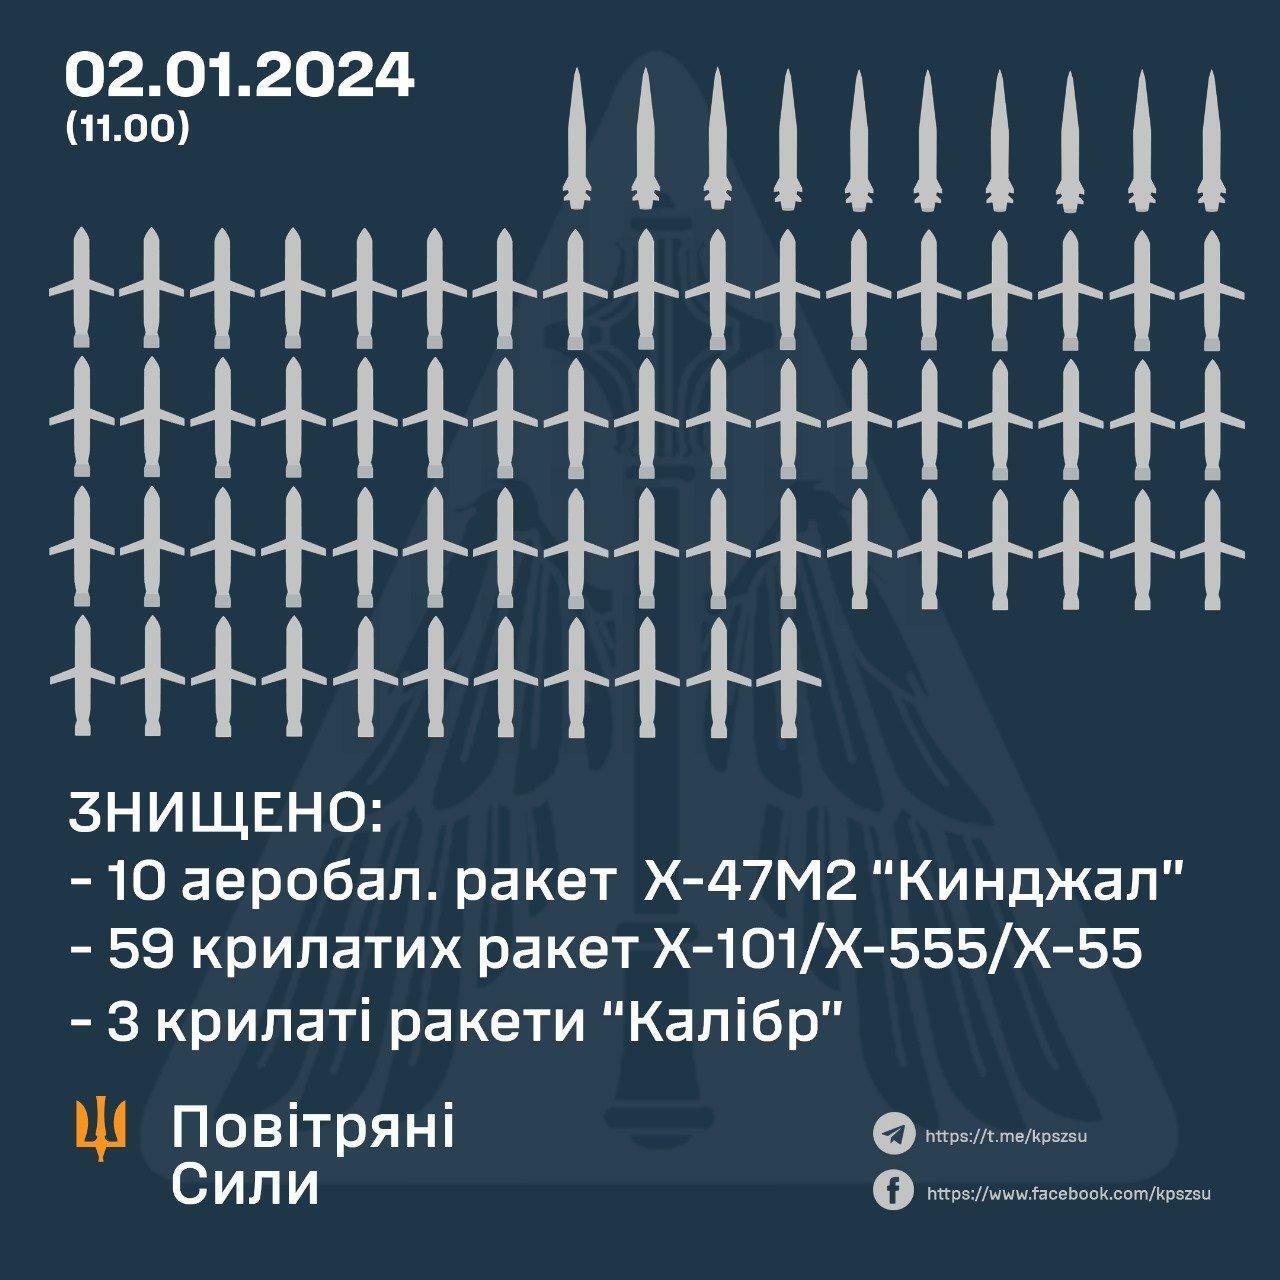 ウクライナ軍より撃墜戦果。キンジャール×10、Kh-101×59、カリブル×3